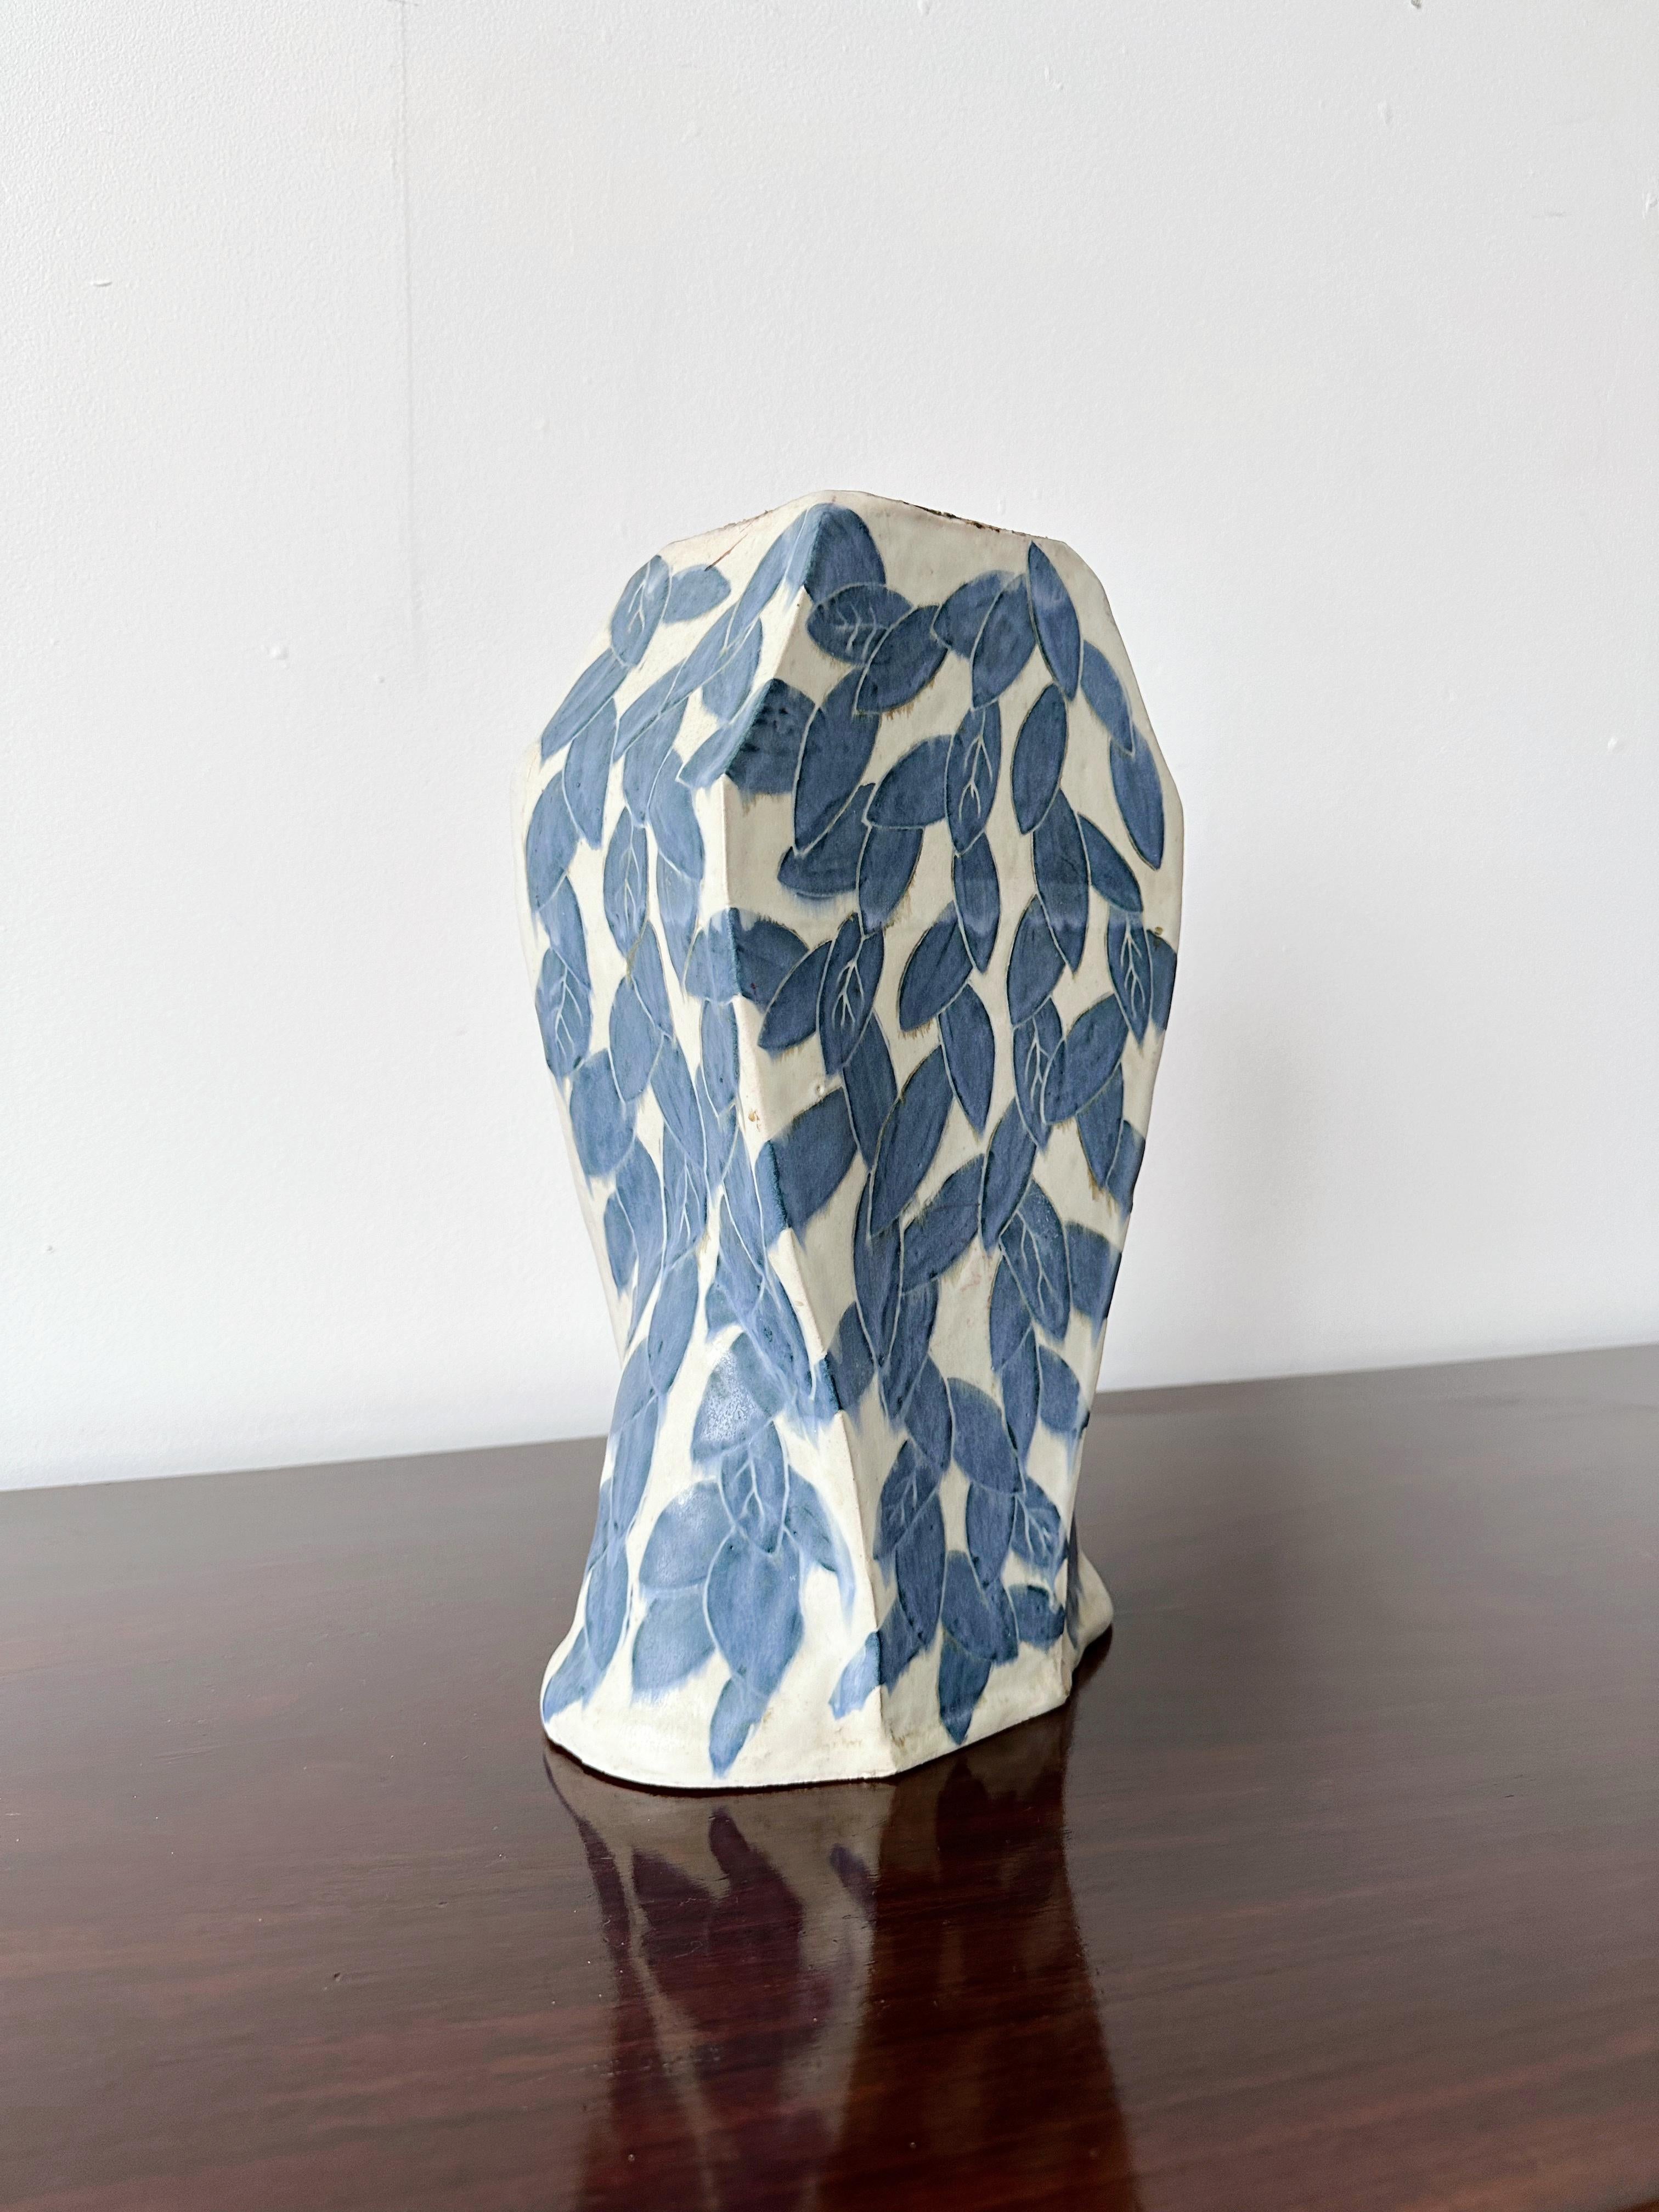 Céramique Grand vase en céramique de style méditerranéen imprimé feuilles blanches et bleues